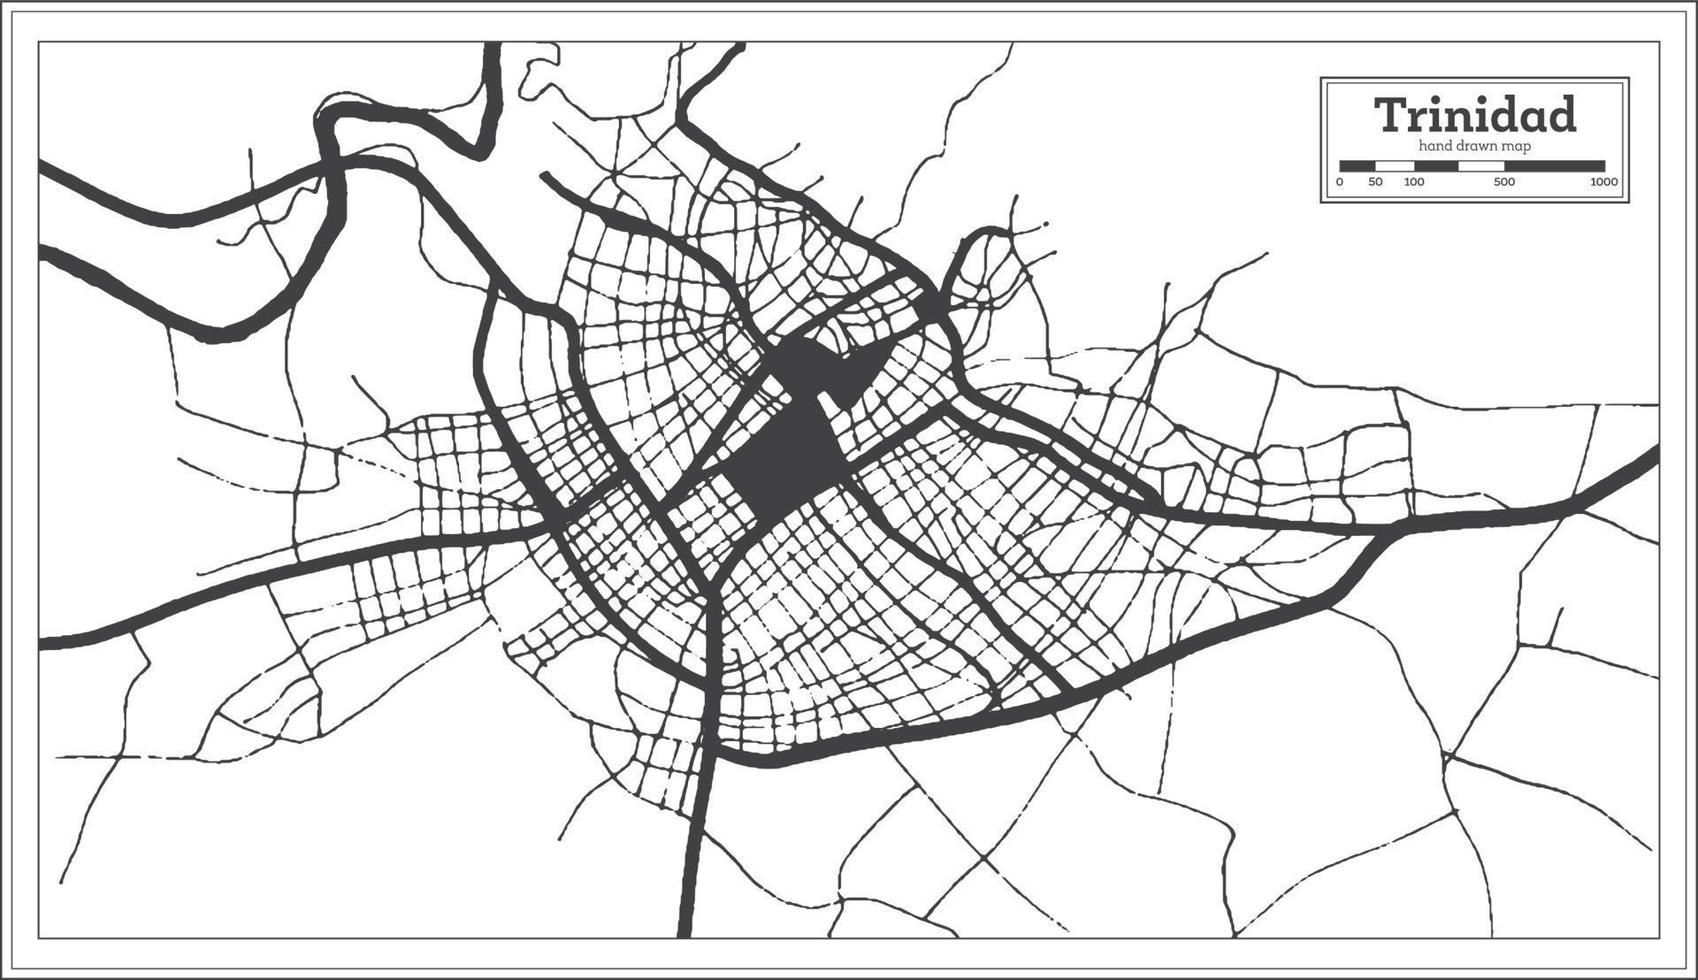 plan de la ville de trinidad cuba en noir et blanc dans un style rétro. carte muette. vecteur